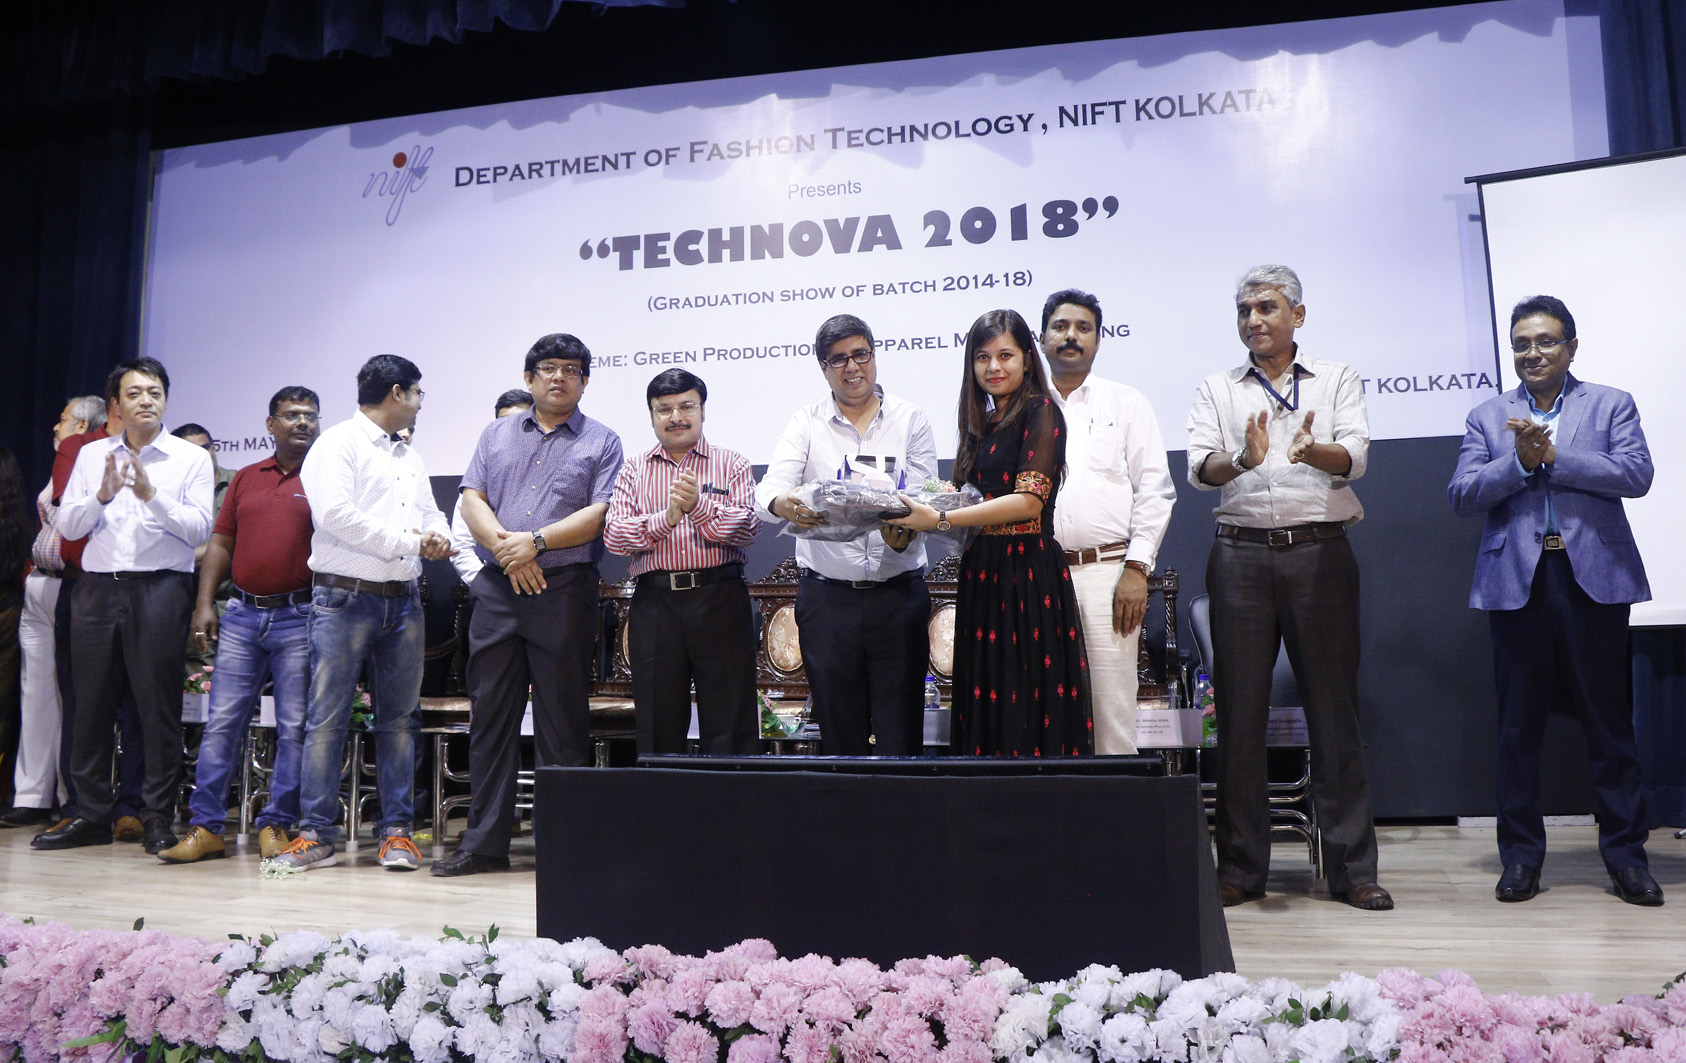 Technova 2018 NIFT Kolkata